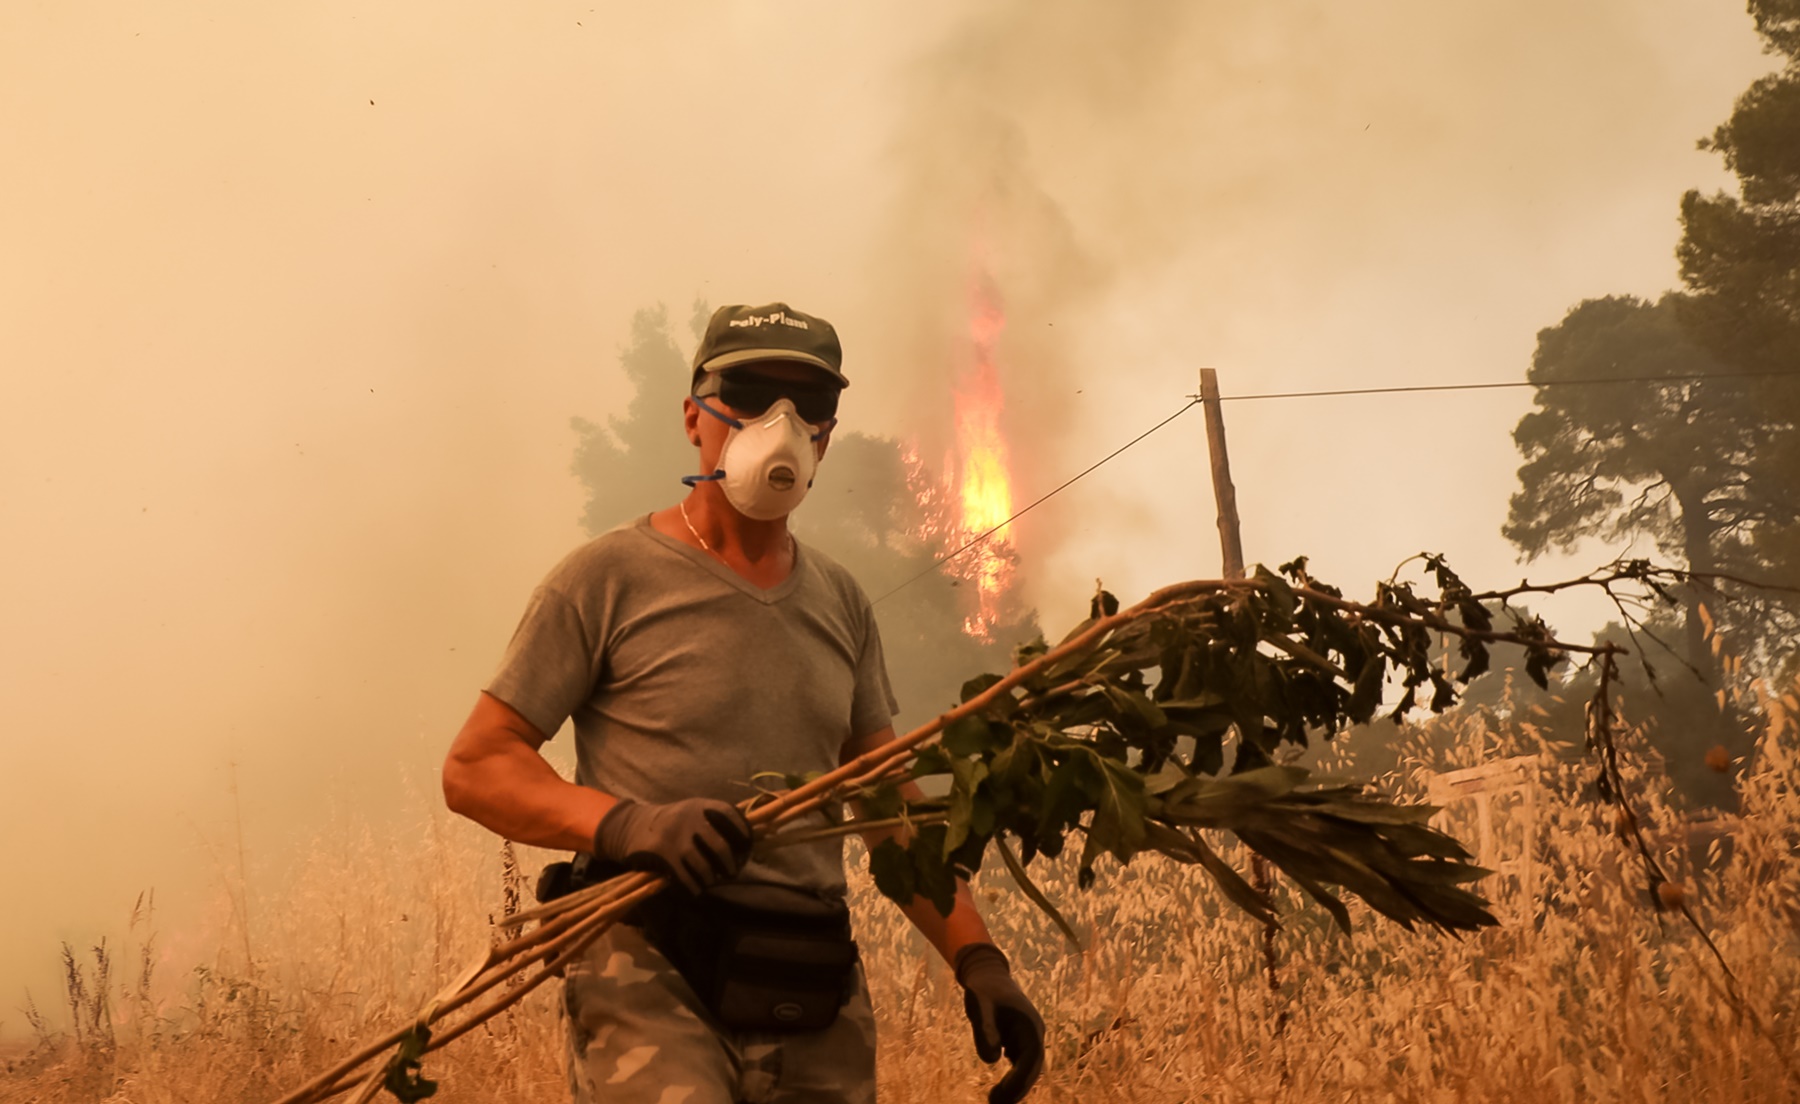 Εναέριος στόλος Ελλάδας: Τις φωτιές τις σβήνουν στο έδαφος, λέει ο Καραϊωσηφίδης